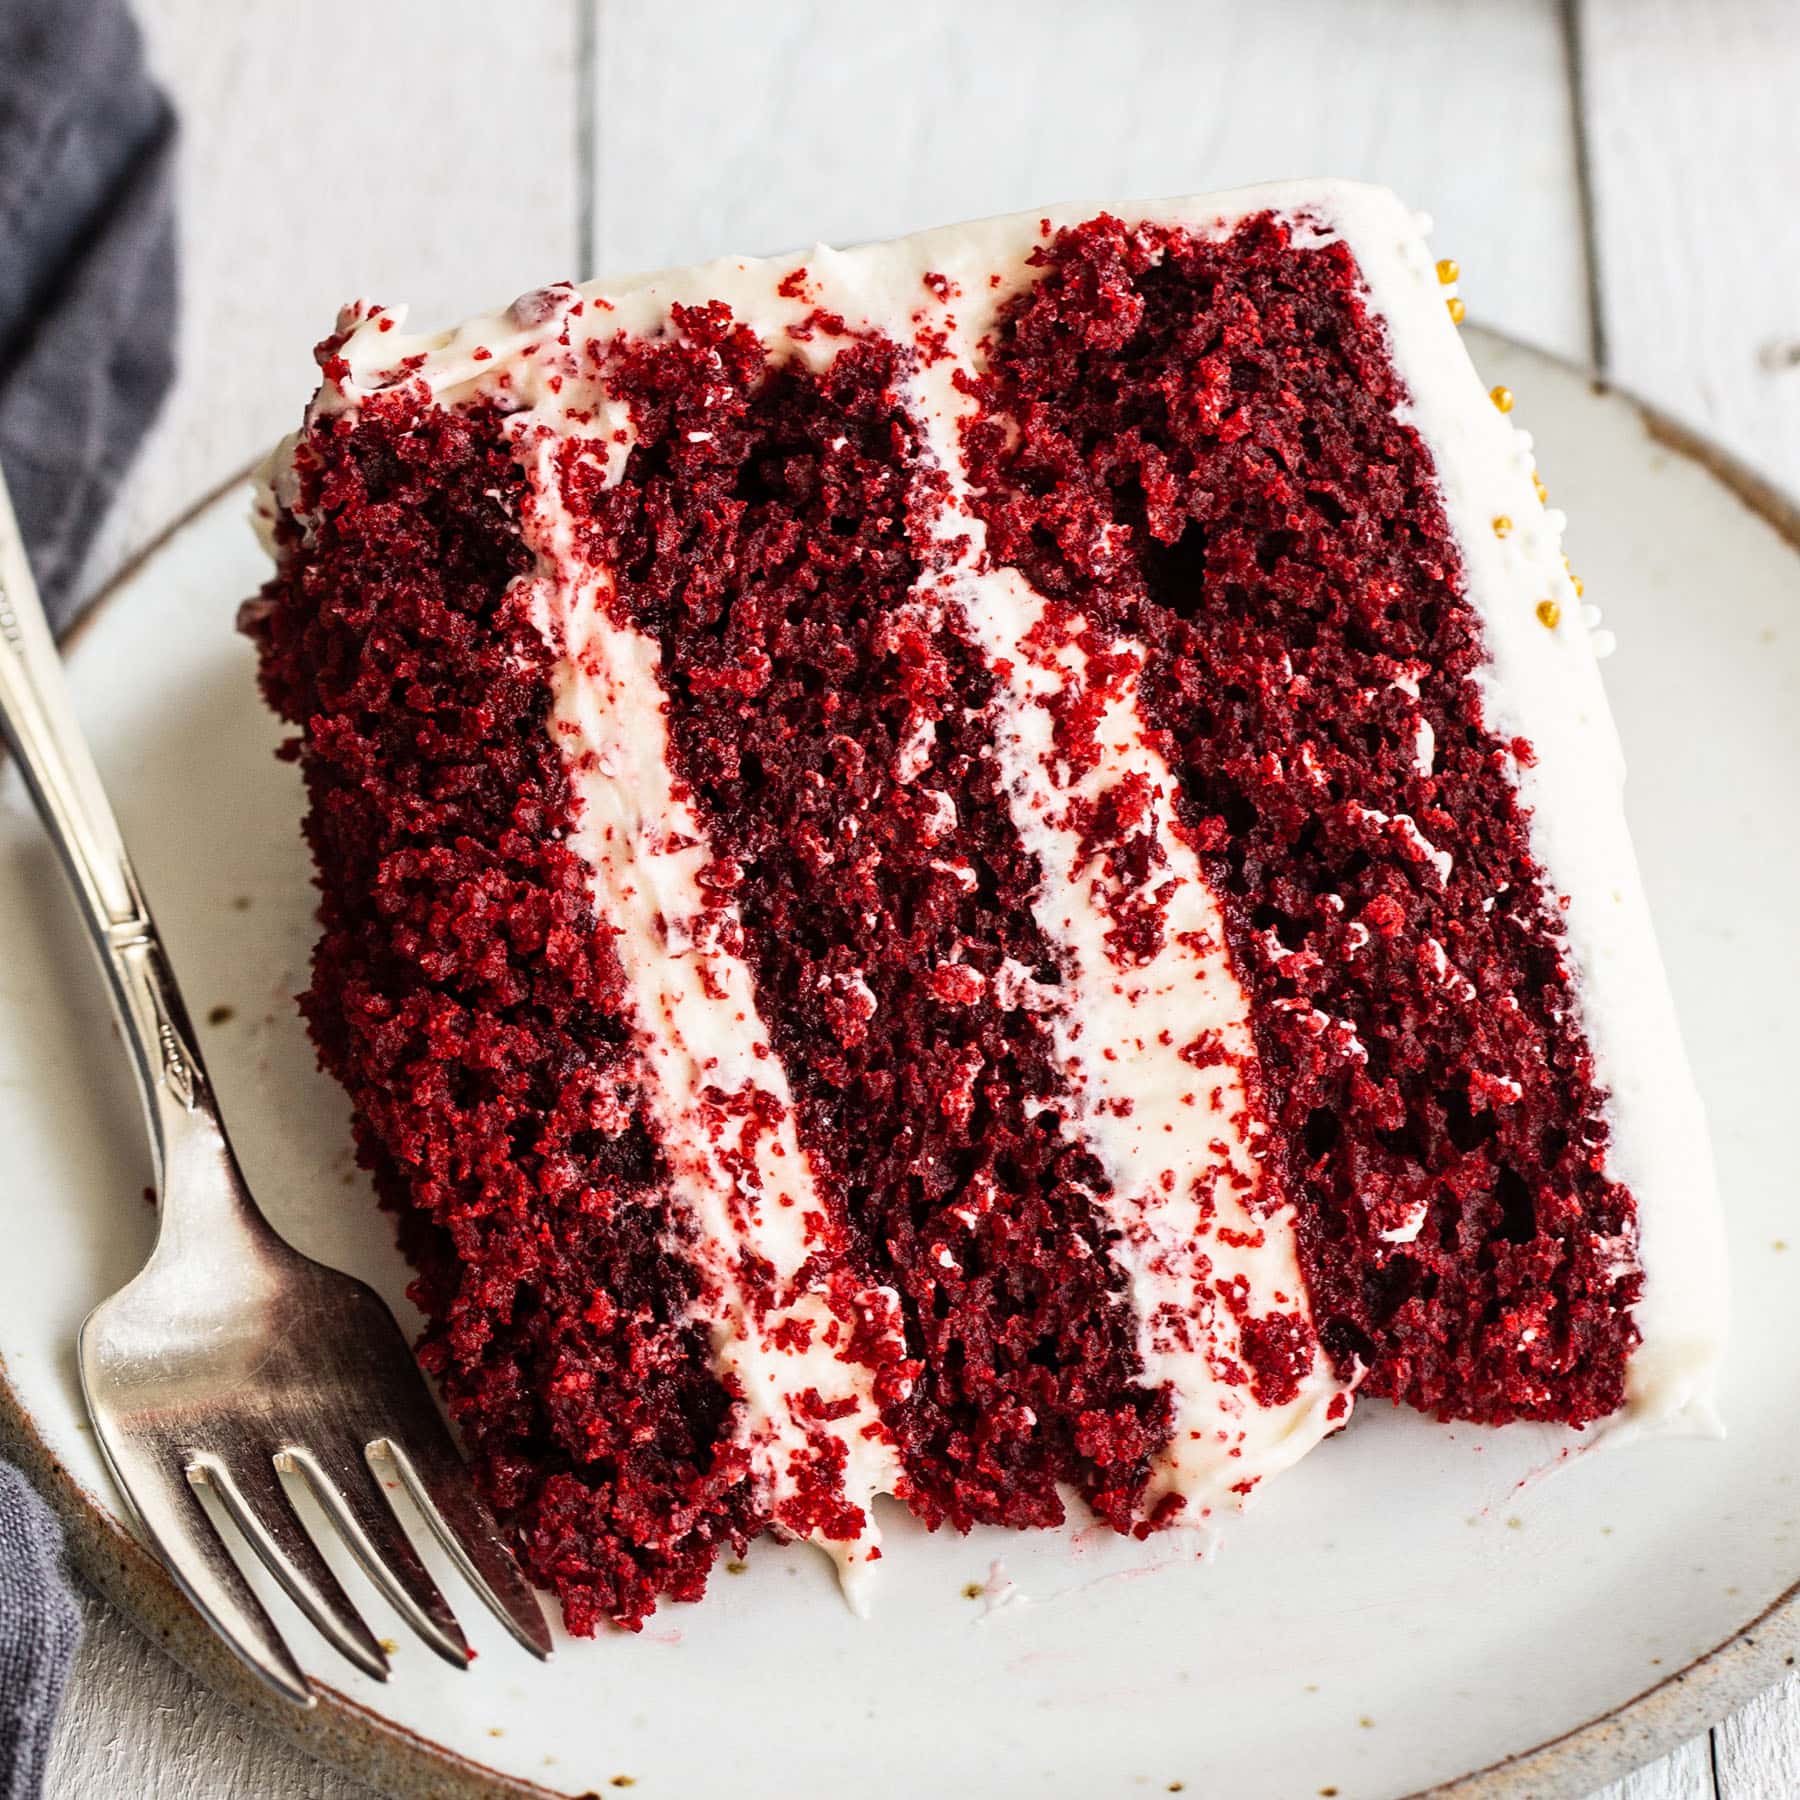 Aggregate 117+ red velvet cake best